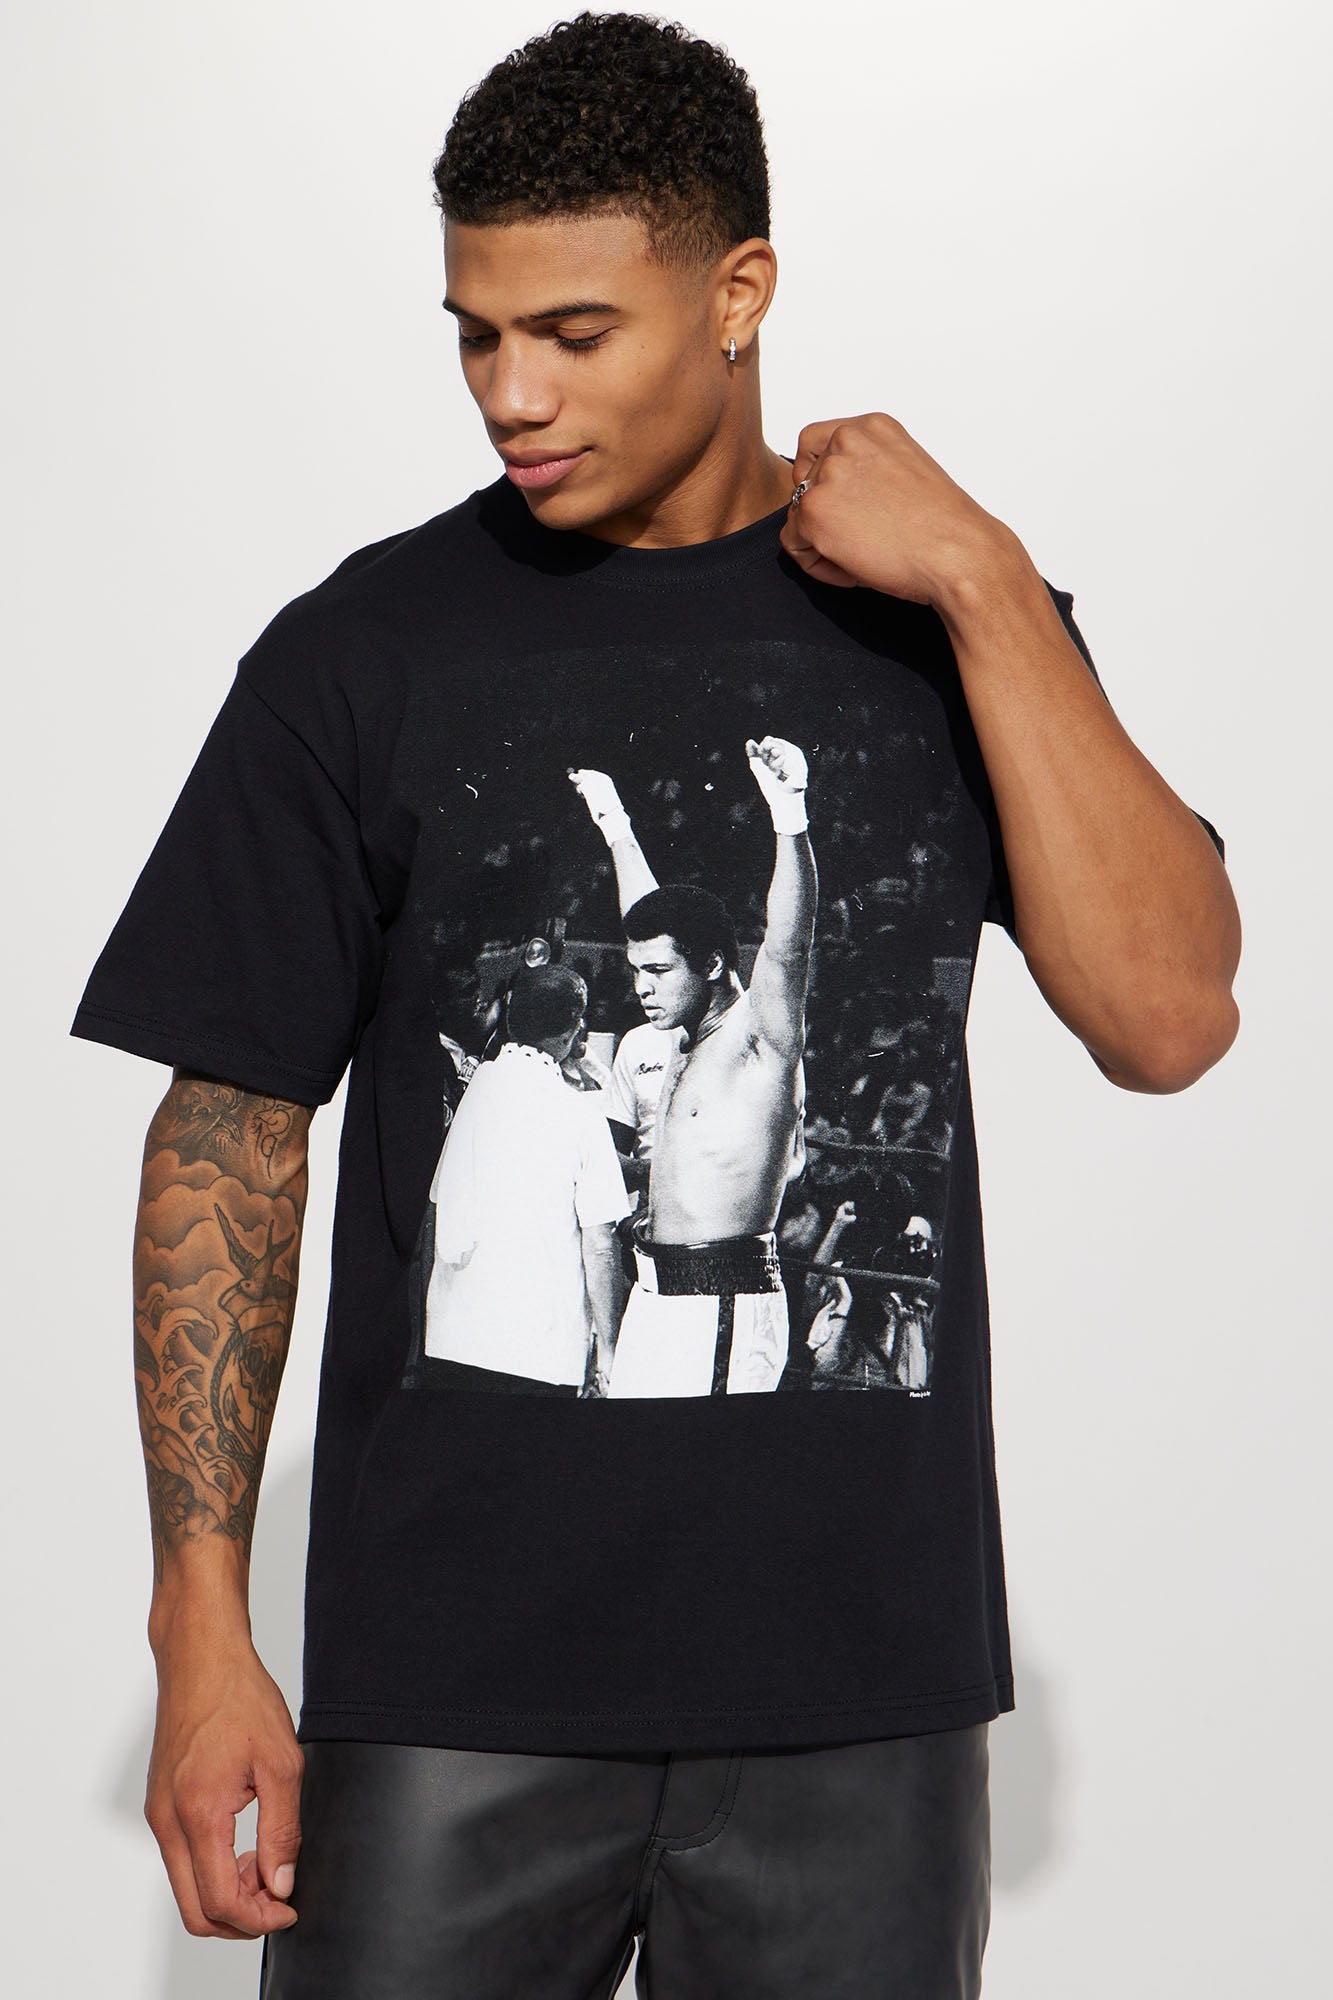 Muhammad Ali Nova, Tee Tees Nova Graphic Sleeve Black Fashion Mens Victory - | Fashion | Short